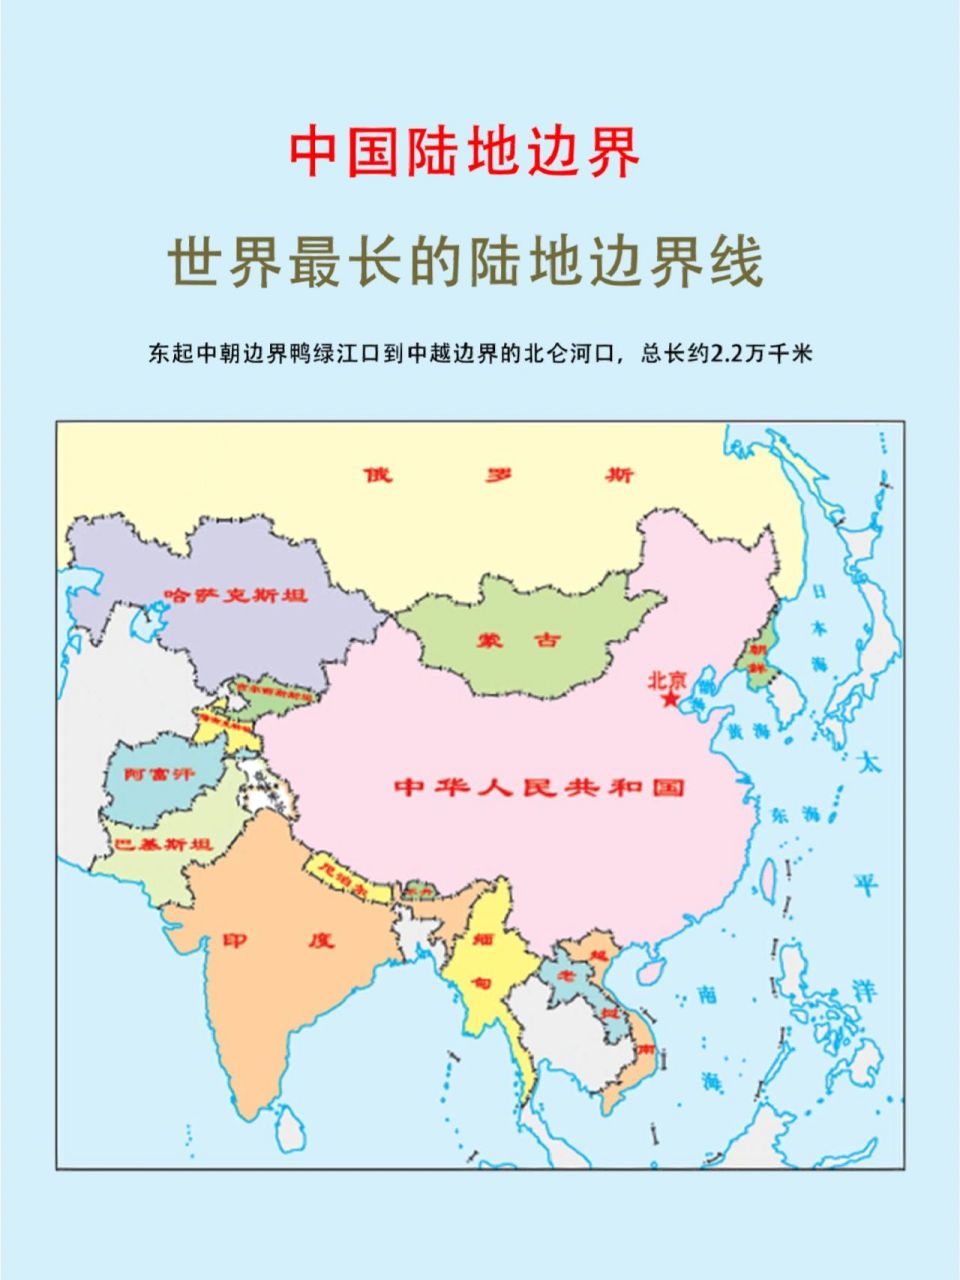 总感觉写这个的时候,想起了高中地理课~ 【中国陆地边界】世界最长的